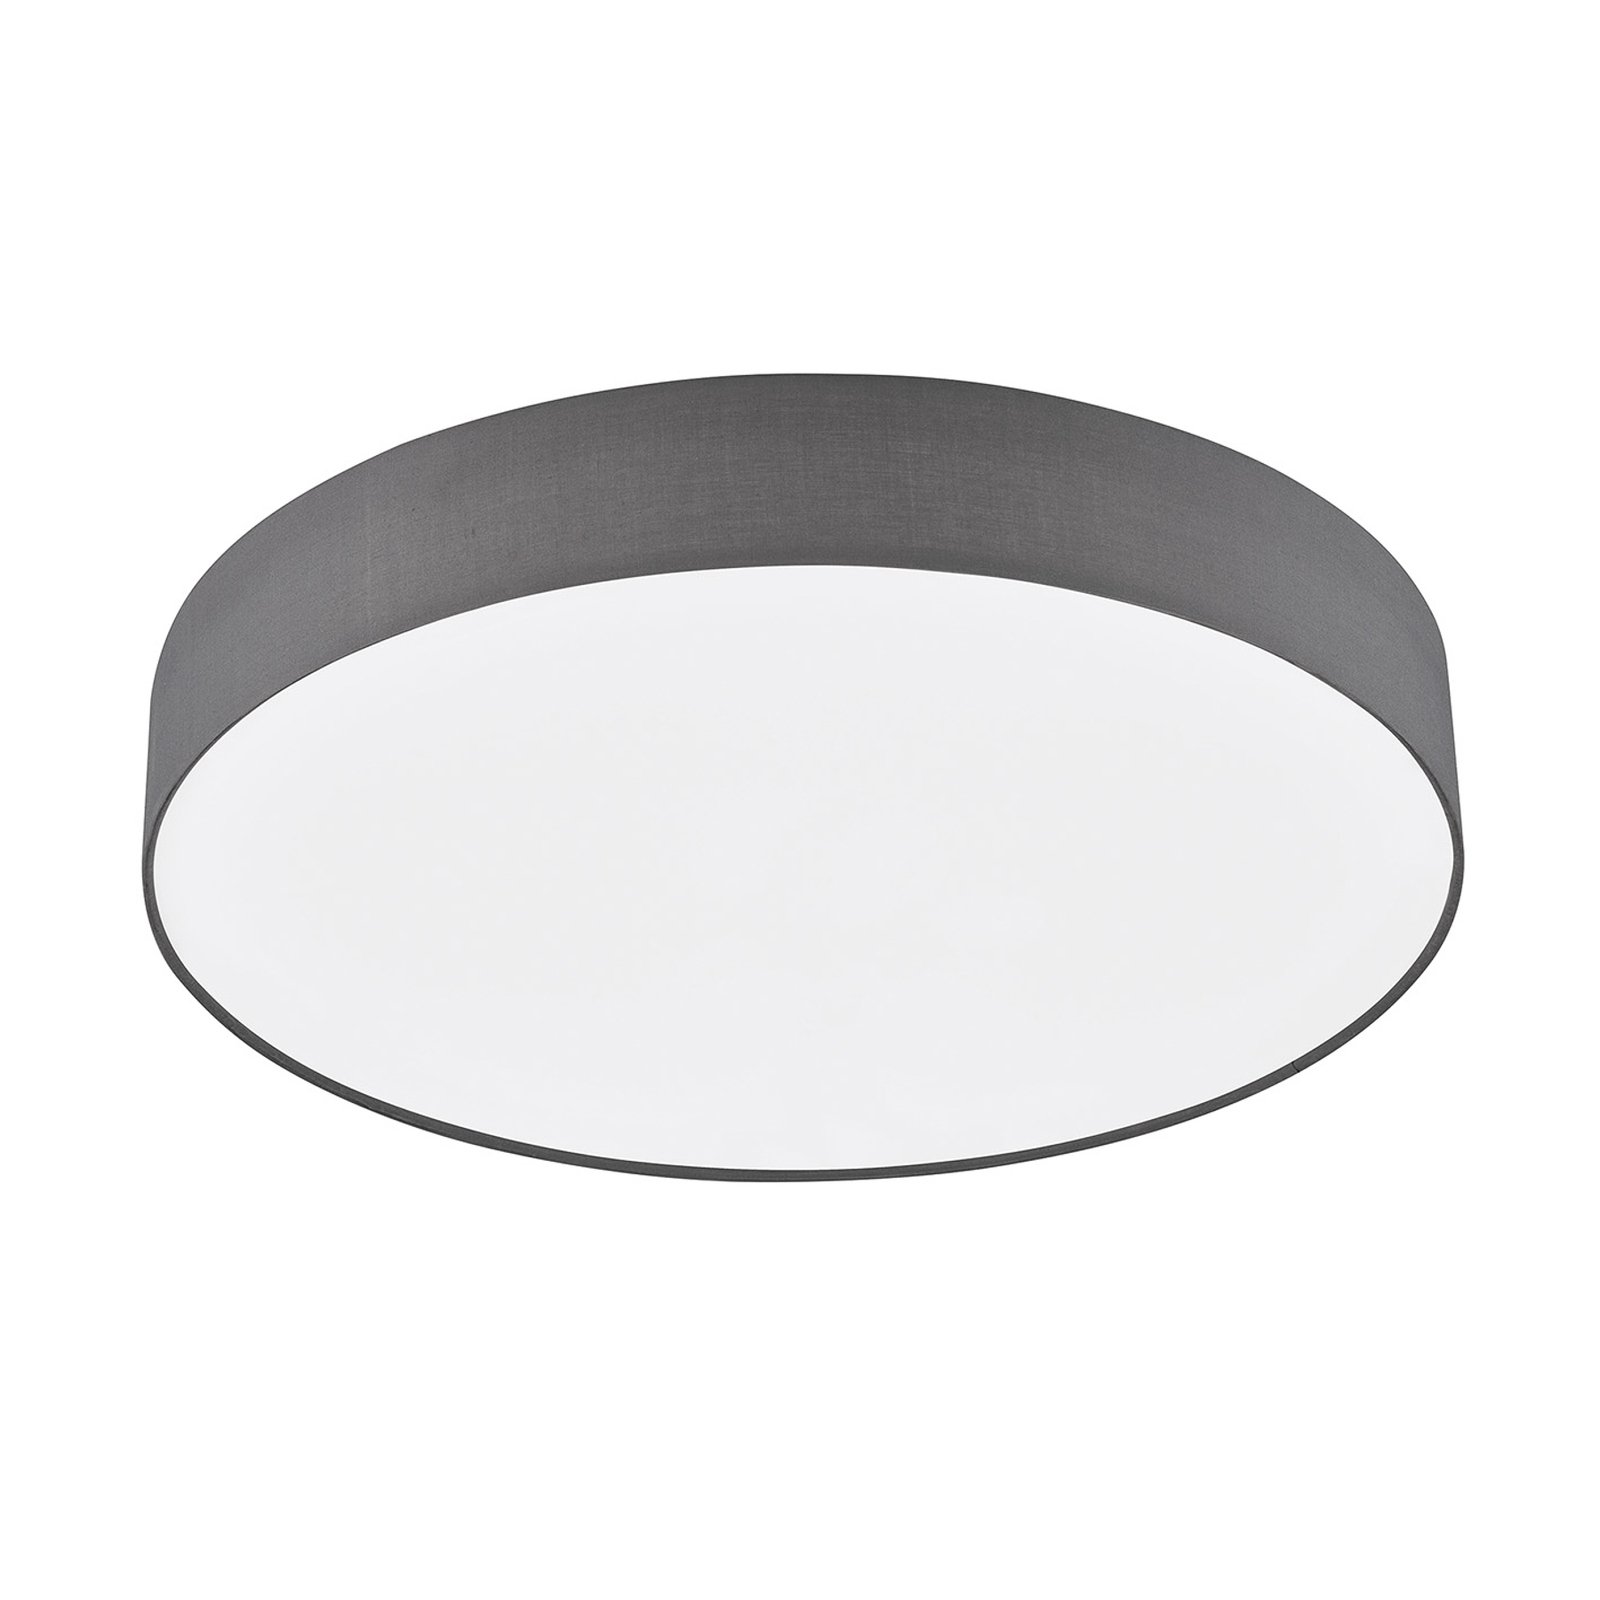 Schöner Wohnen Pina LED ceiling lamp CCT dark grey